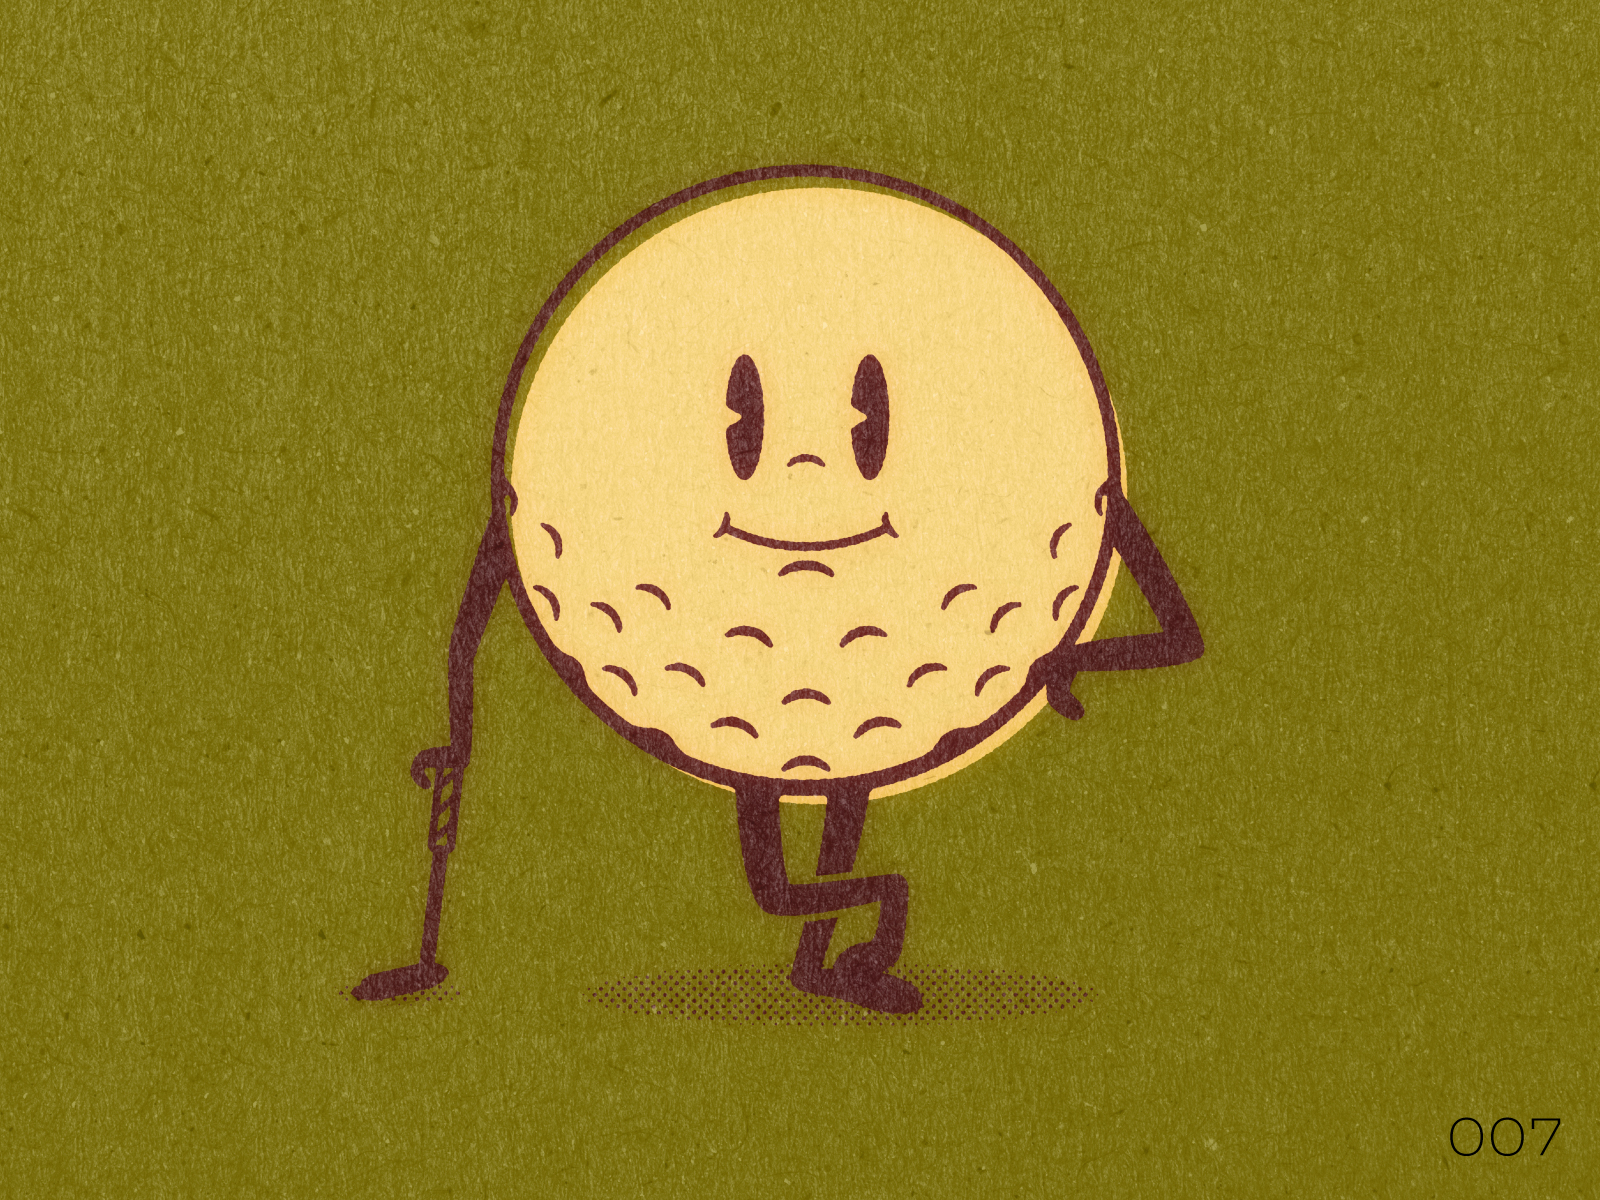 007 Golf Ball design golf golf ball mascot monday mascots process vector